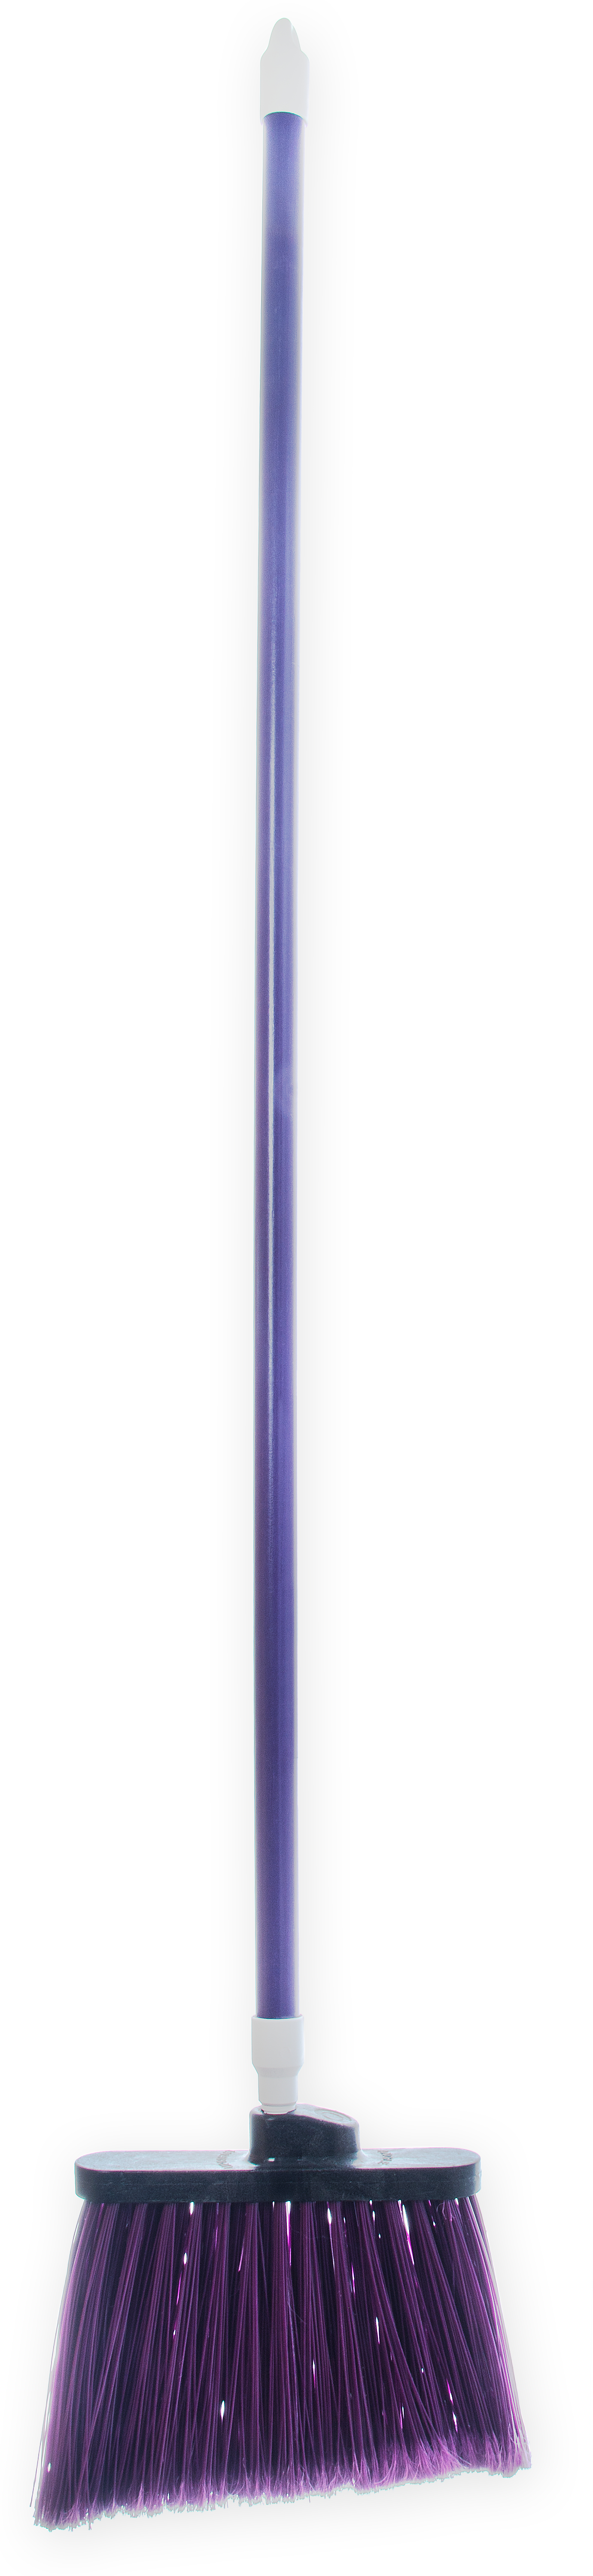 Duo-Sweep Angle Broom Flagged Bristle 56 Long - Purple